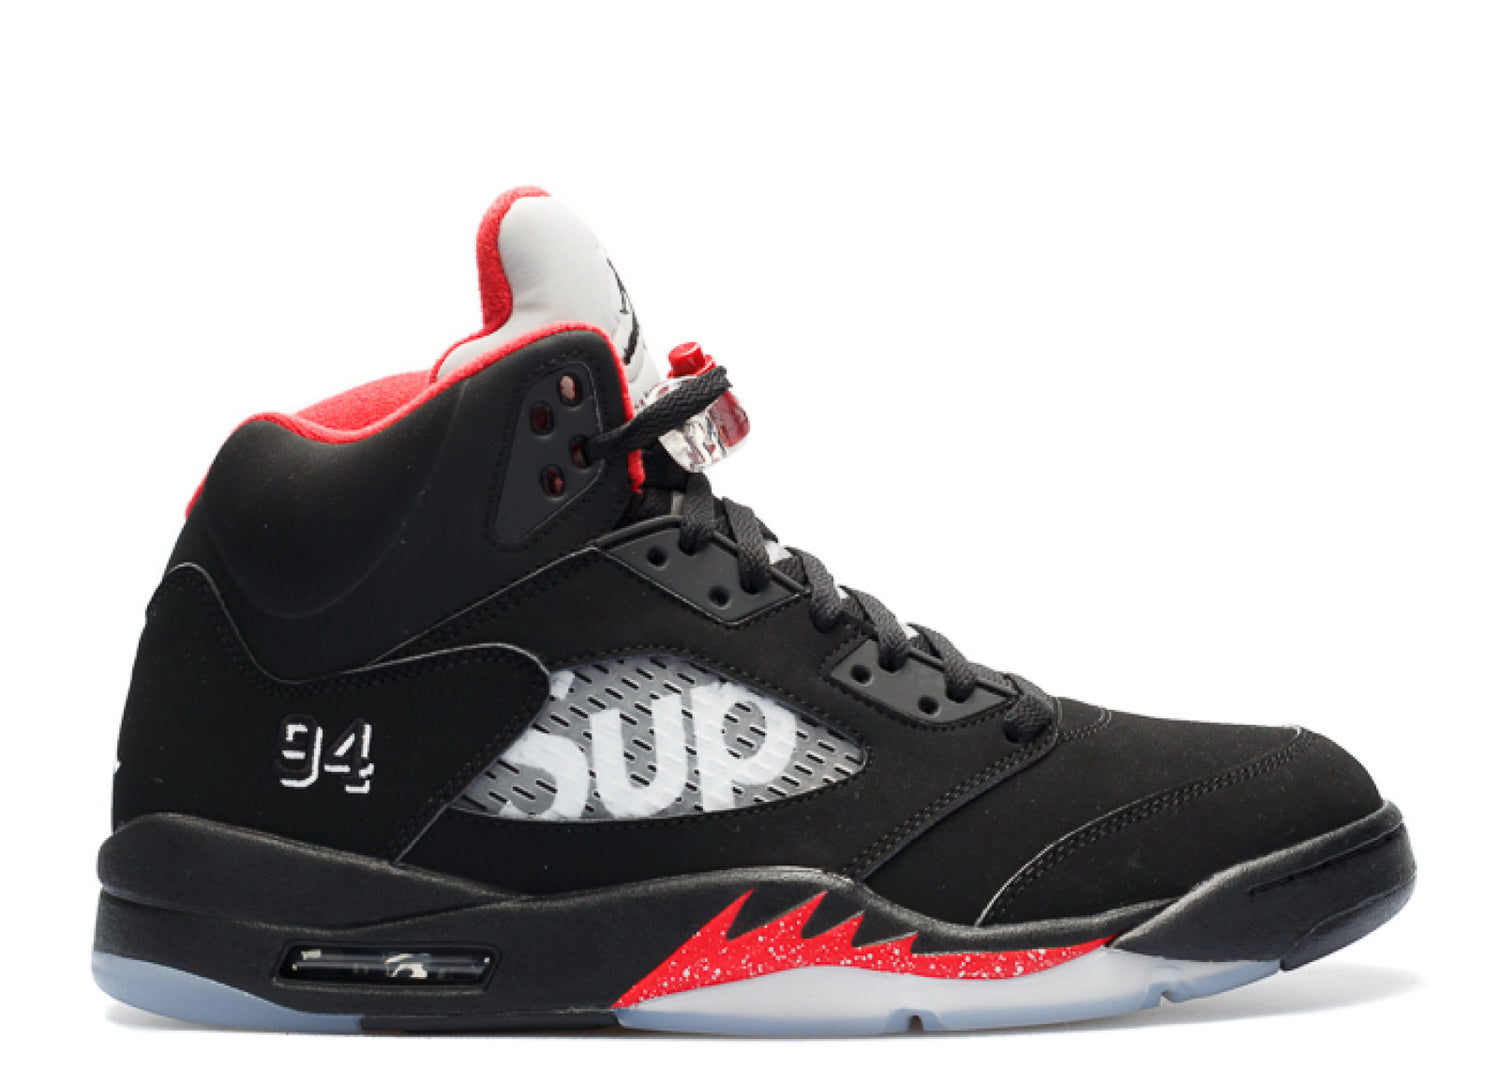 Air Jordan 5 Retro "Supreme" - Black